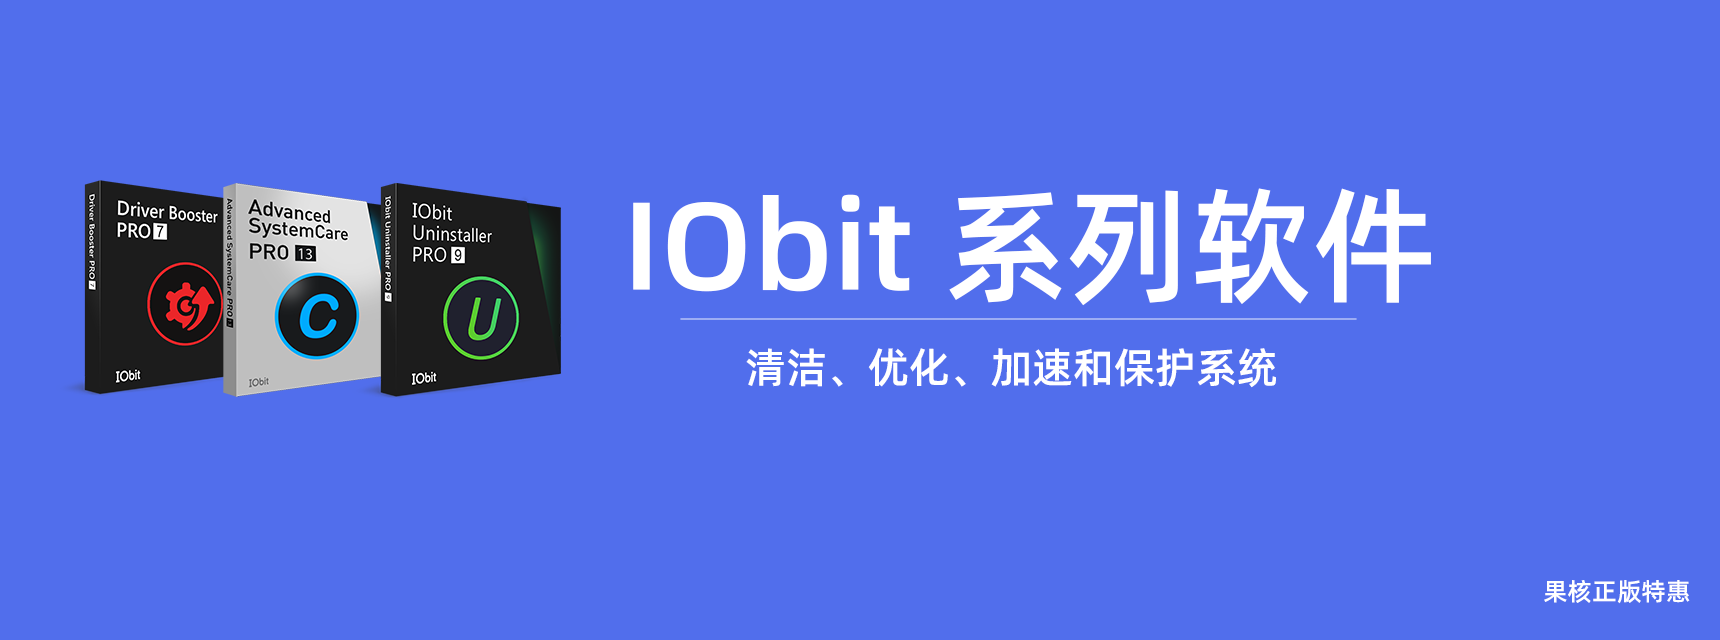 【正版特惠】IObit 系列软件 正版永久激活